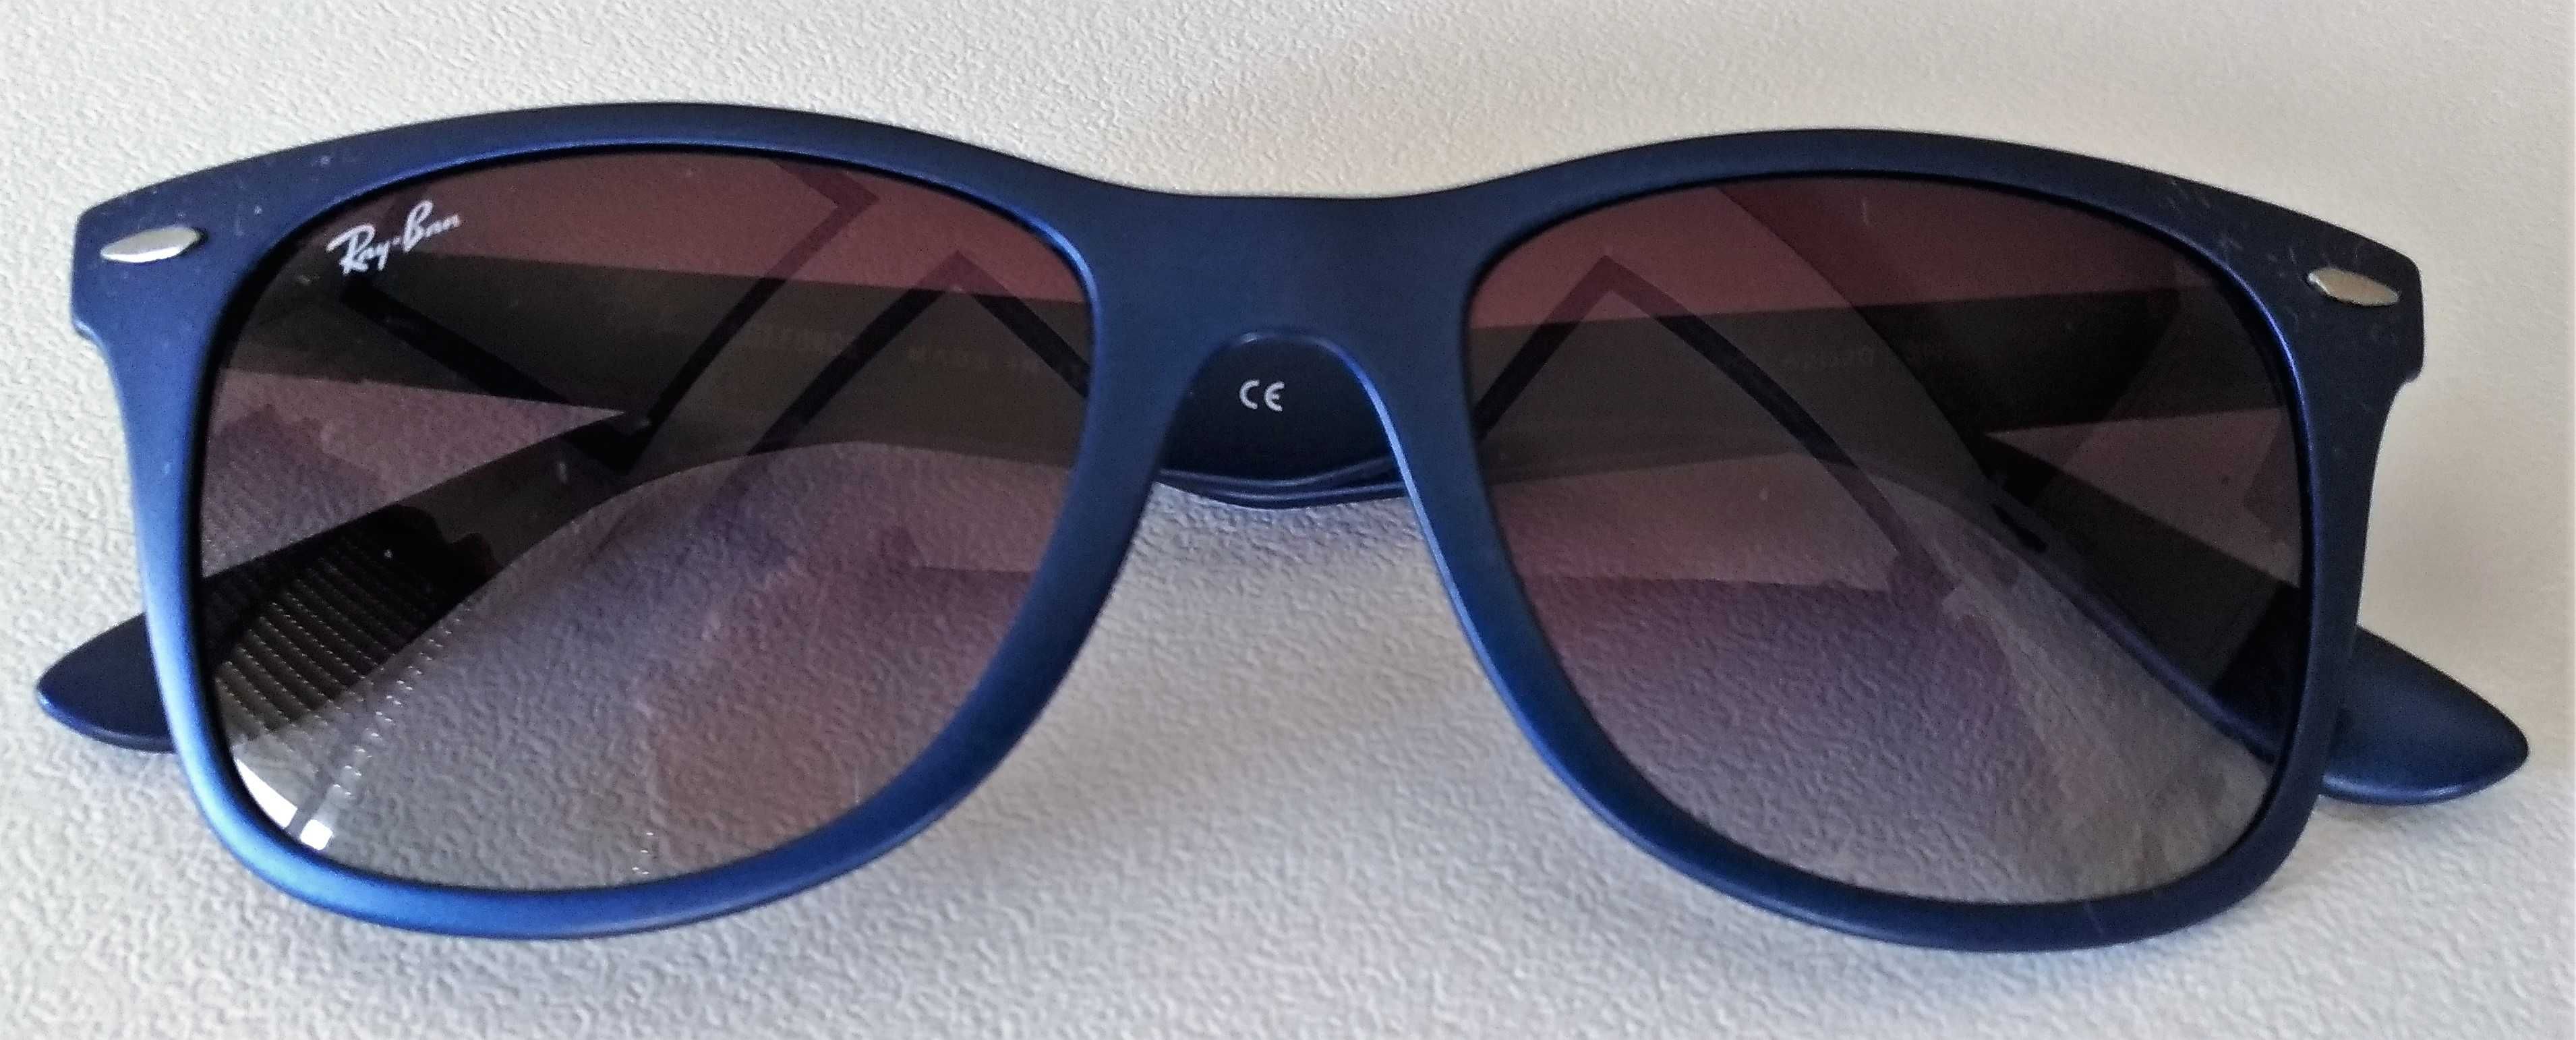 Óculos de Sol azuis escuros Ray Ban LiteForce para homem